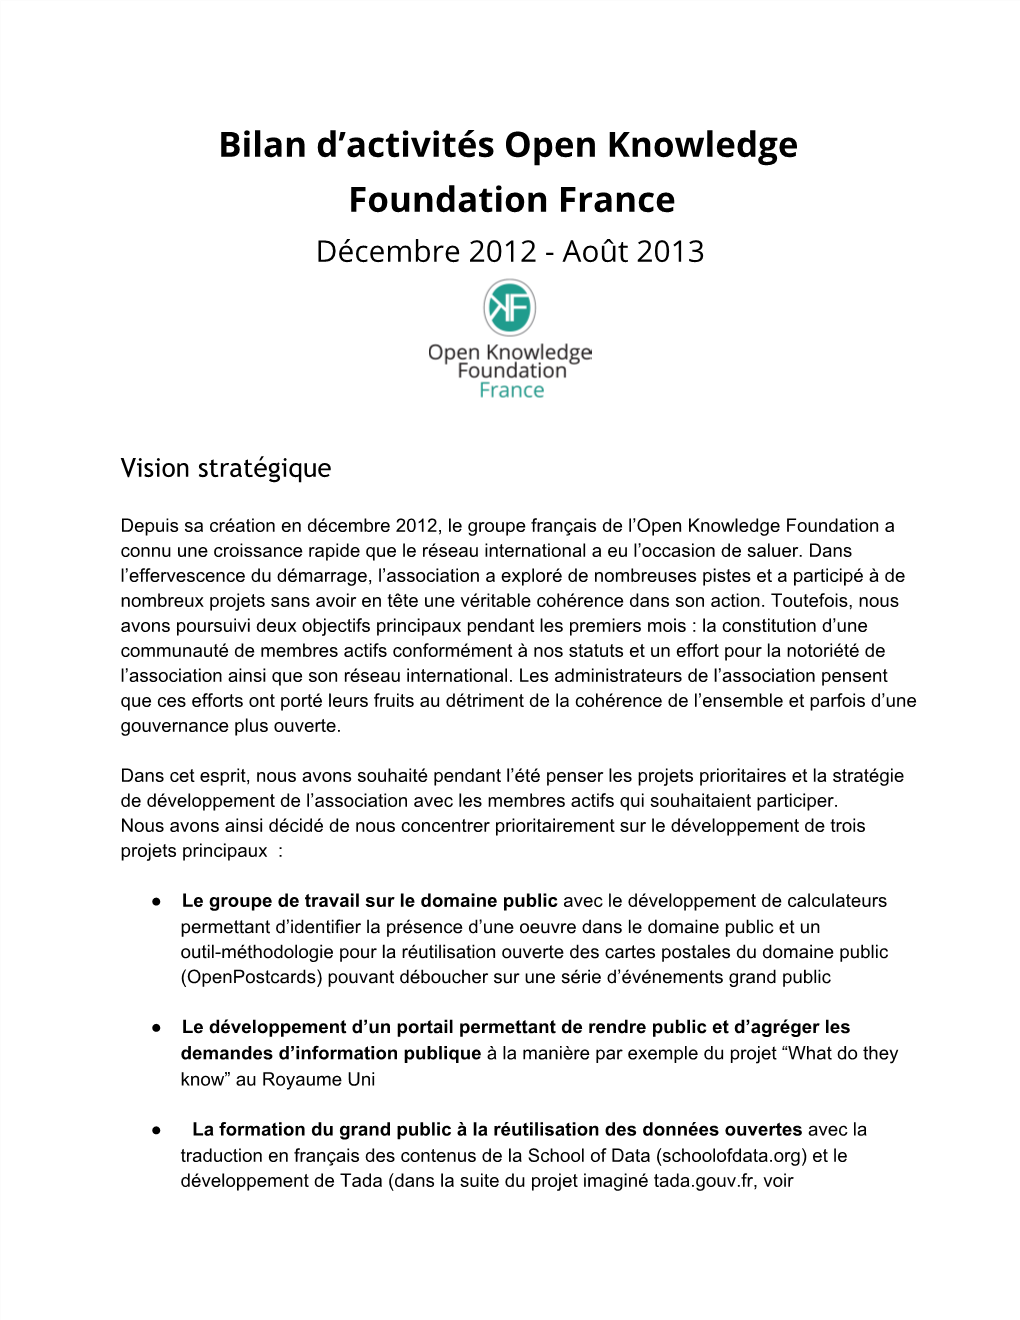 Bilan D'activités Open Knowledge Foundation France